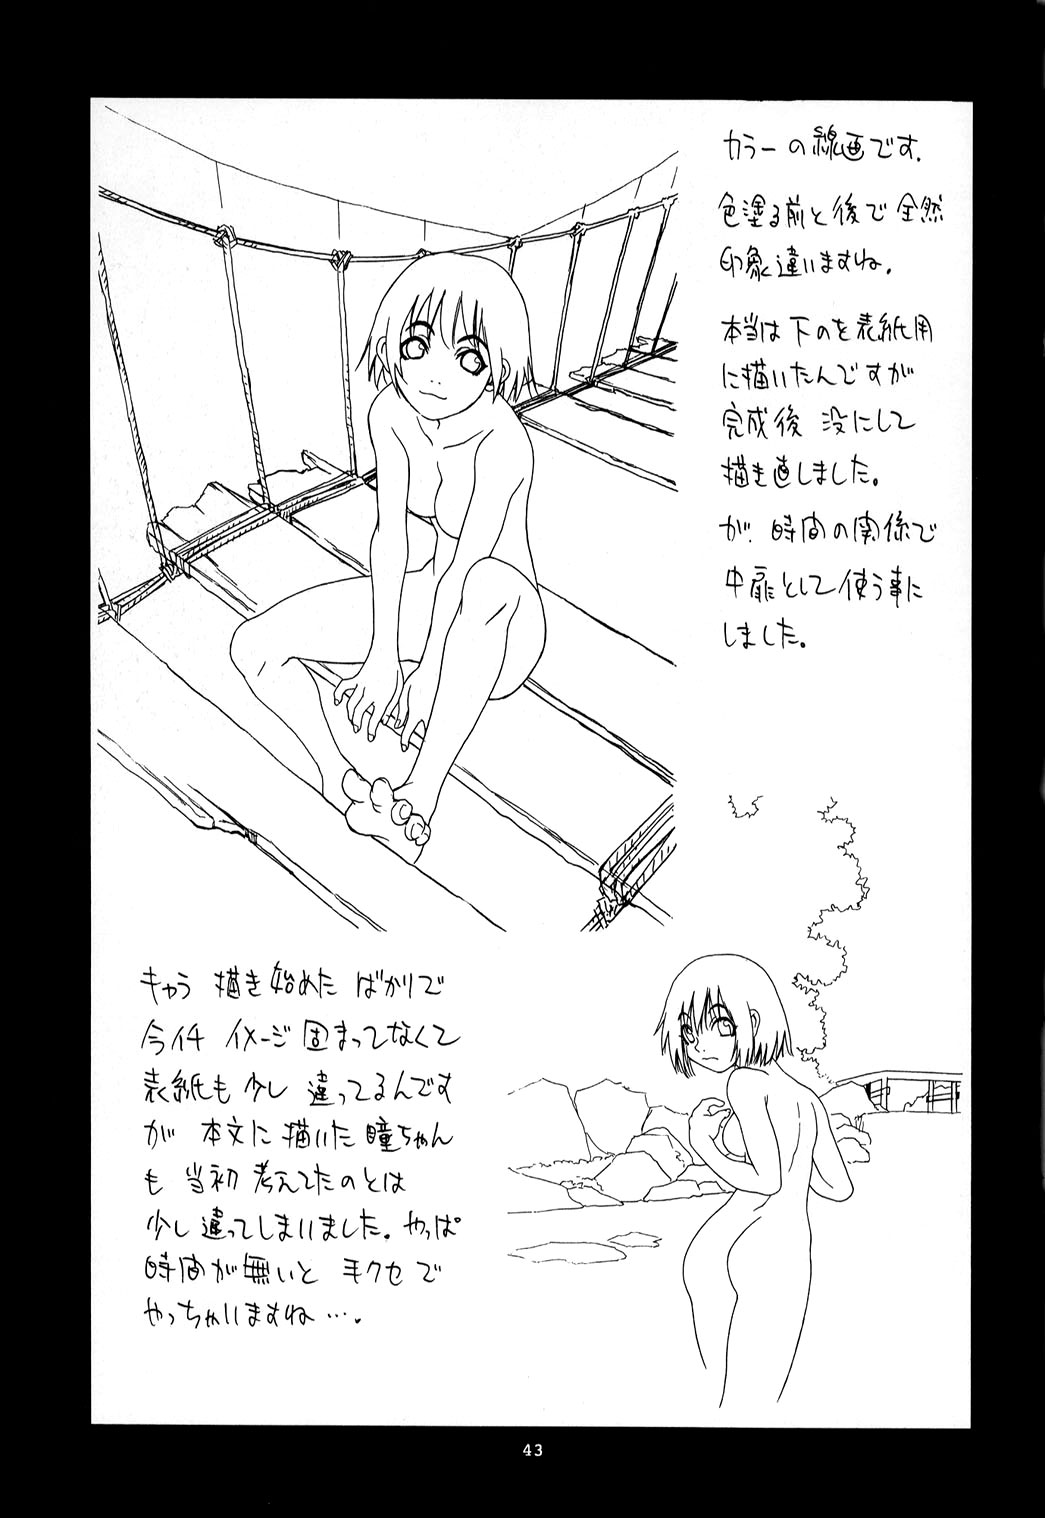 [Nouzui Majutsu &amp; NO-NO&#039;S] Hitomi&#039;s Great Adventure [English][4dawgz] 